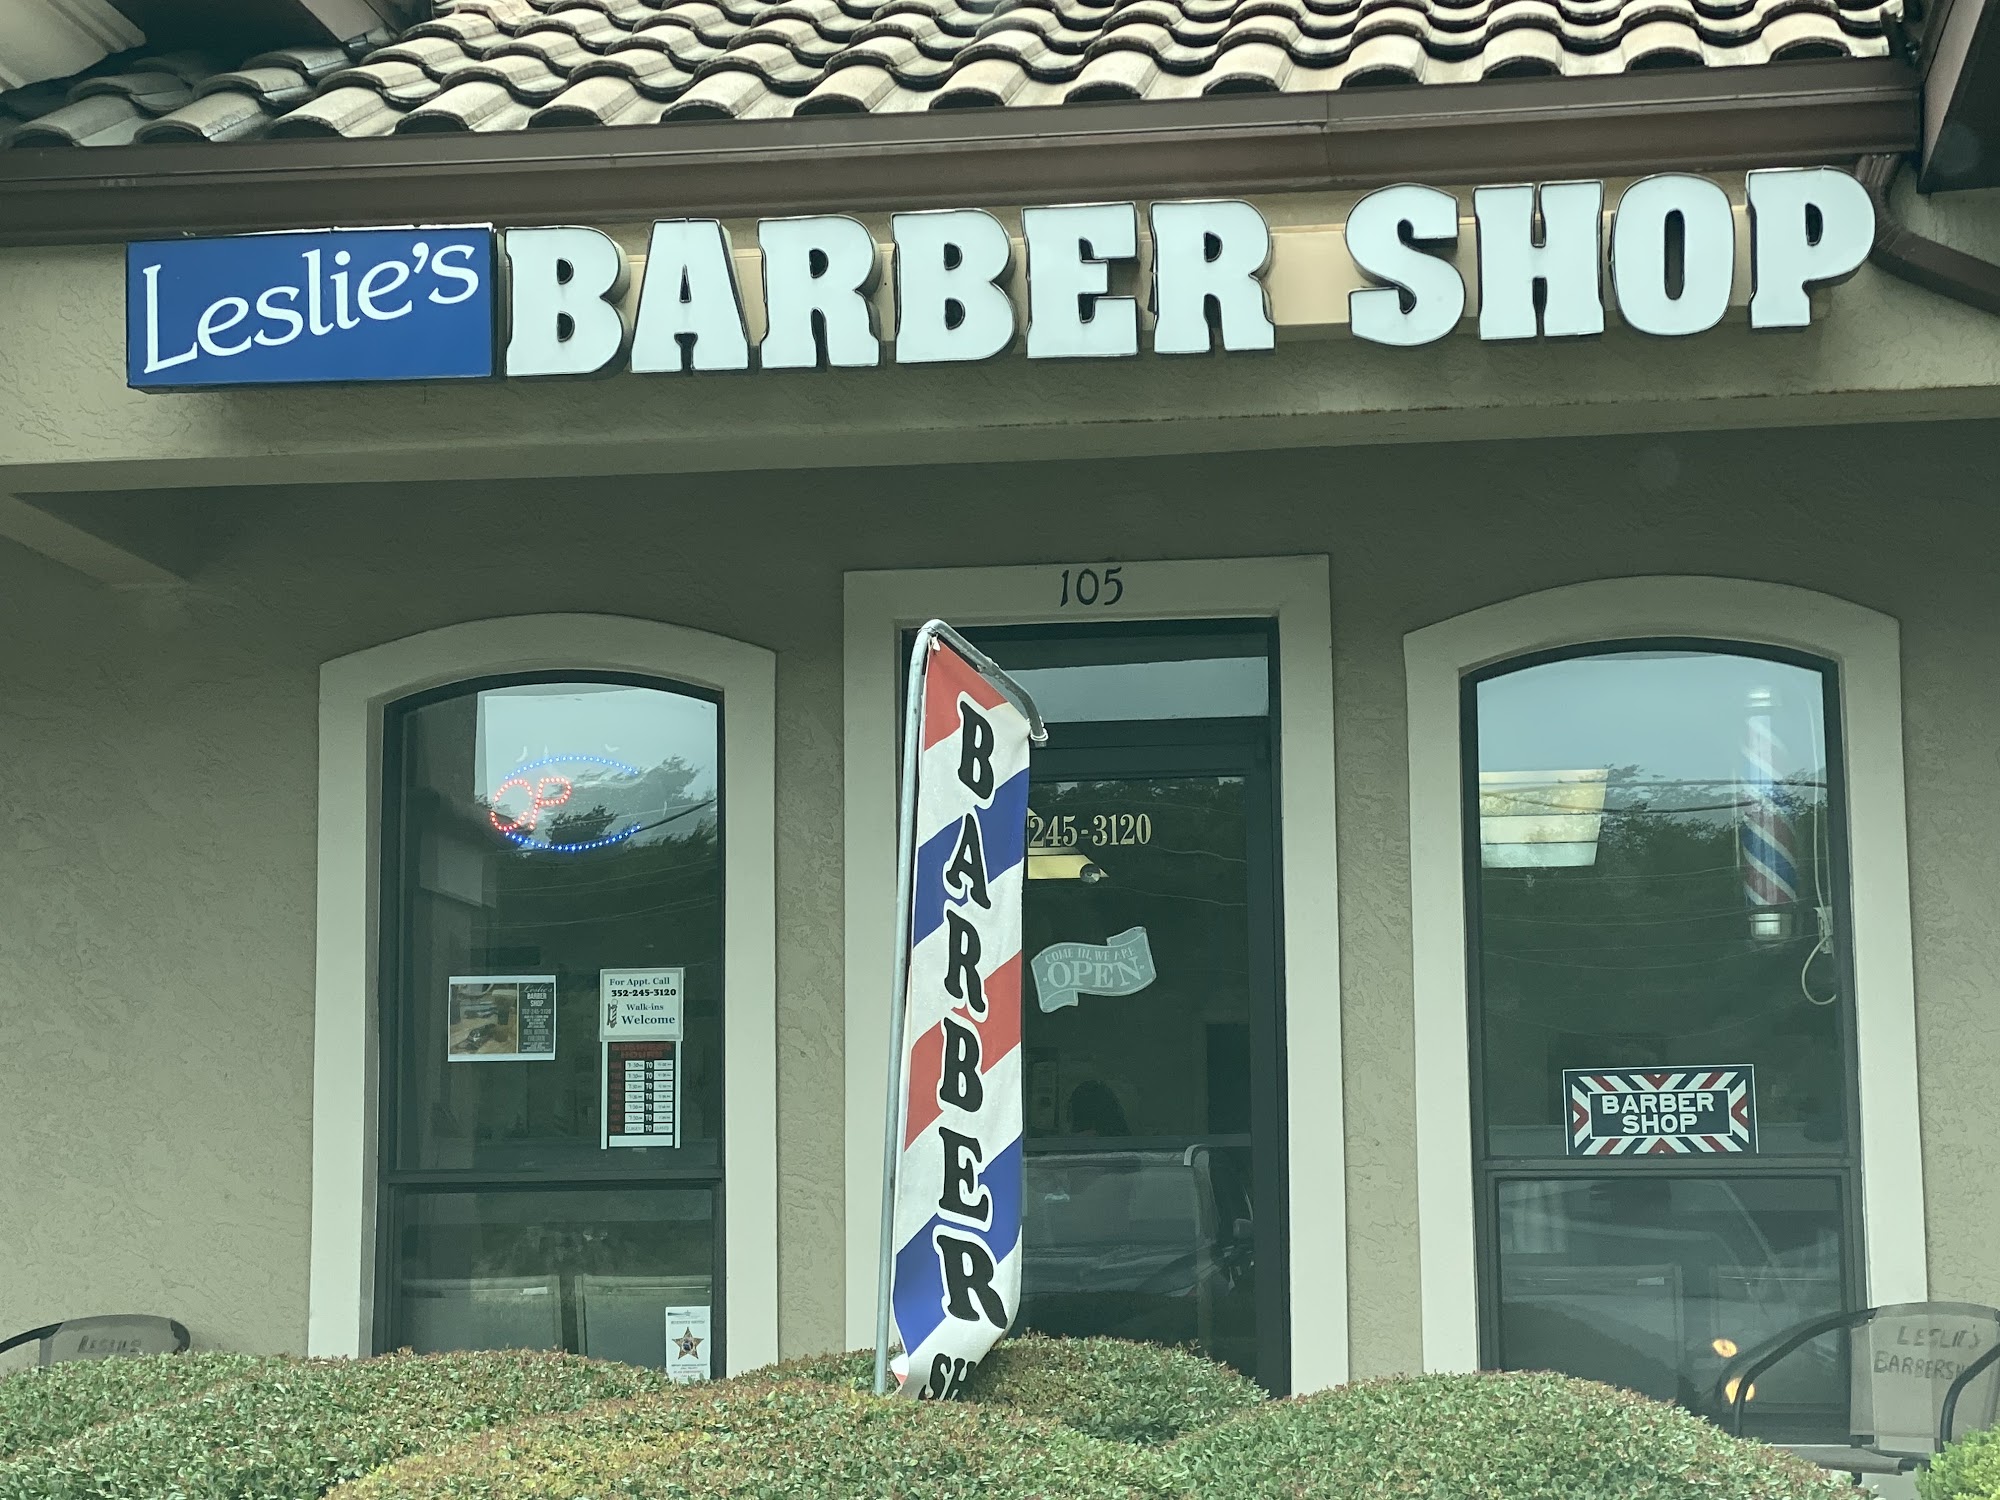 Leslie's Barber Shop